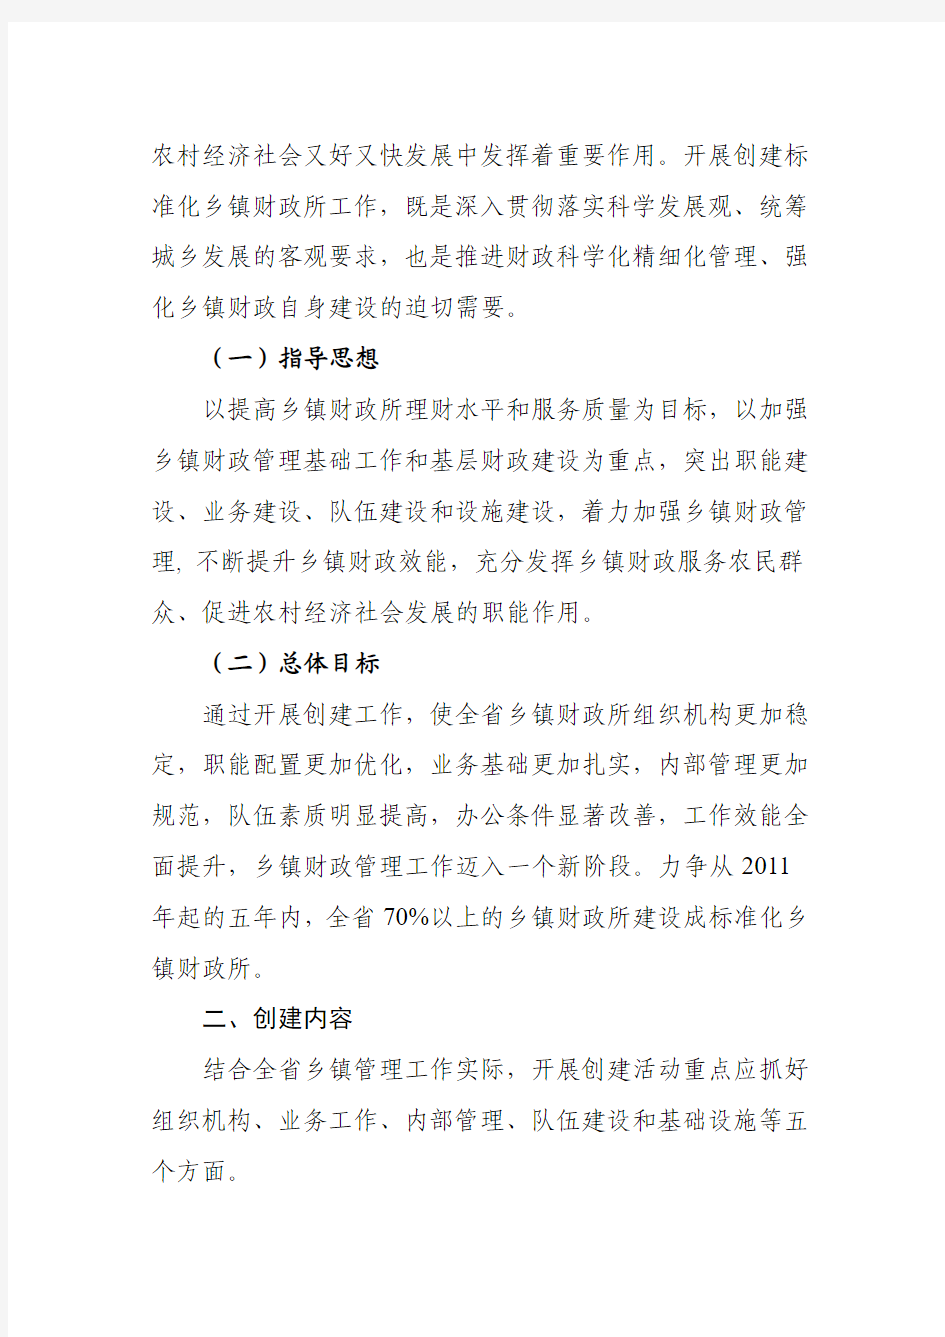 湖南省创建标准化财政所文件